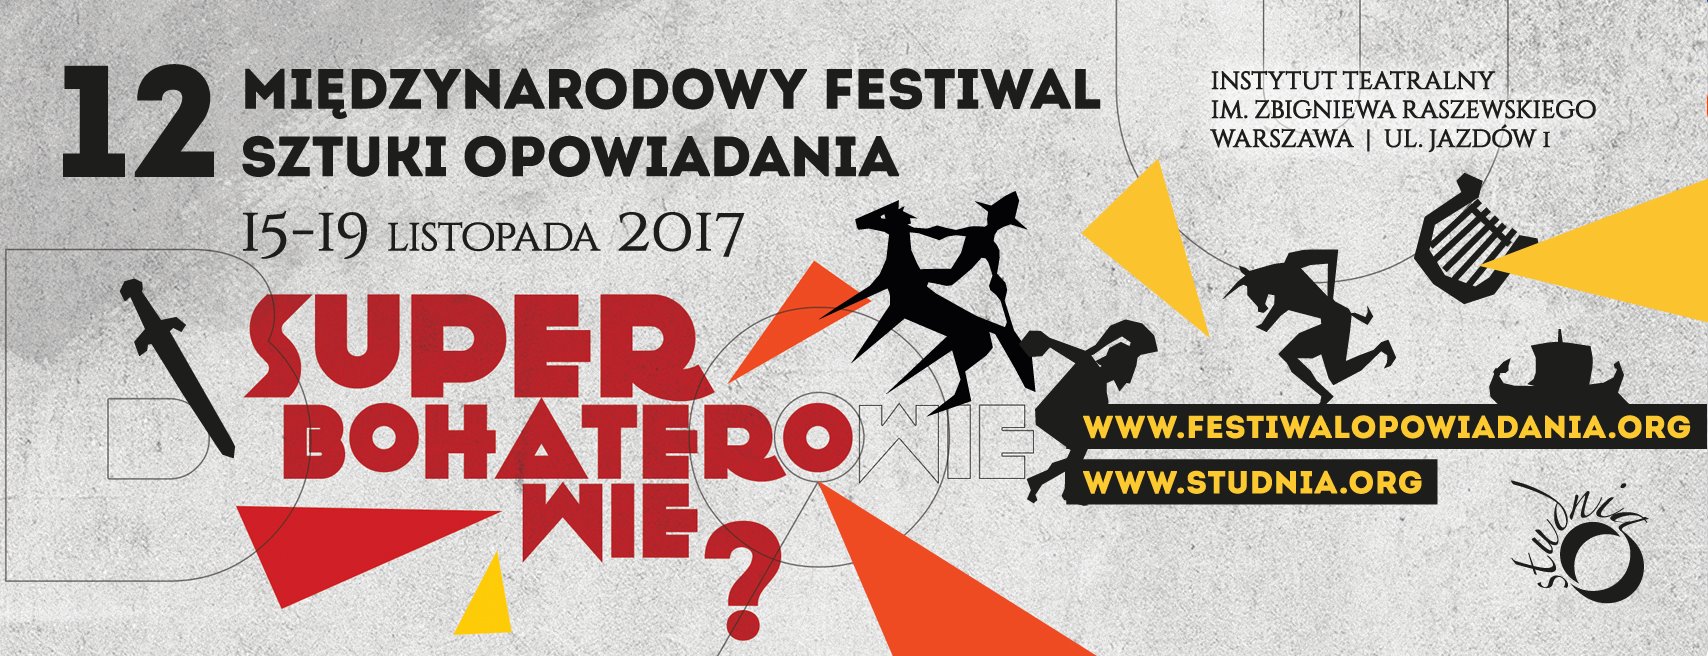 12. Międzynarodowy Festiwal Sztuki Opowiadania w Warszawie